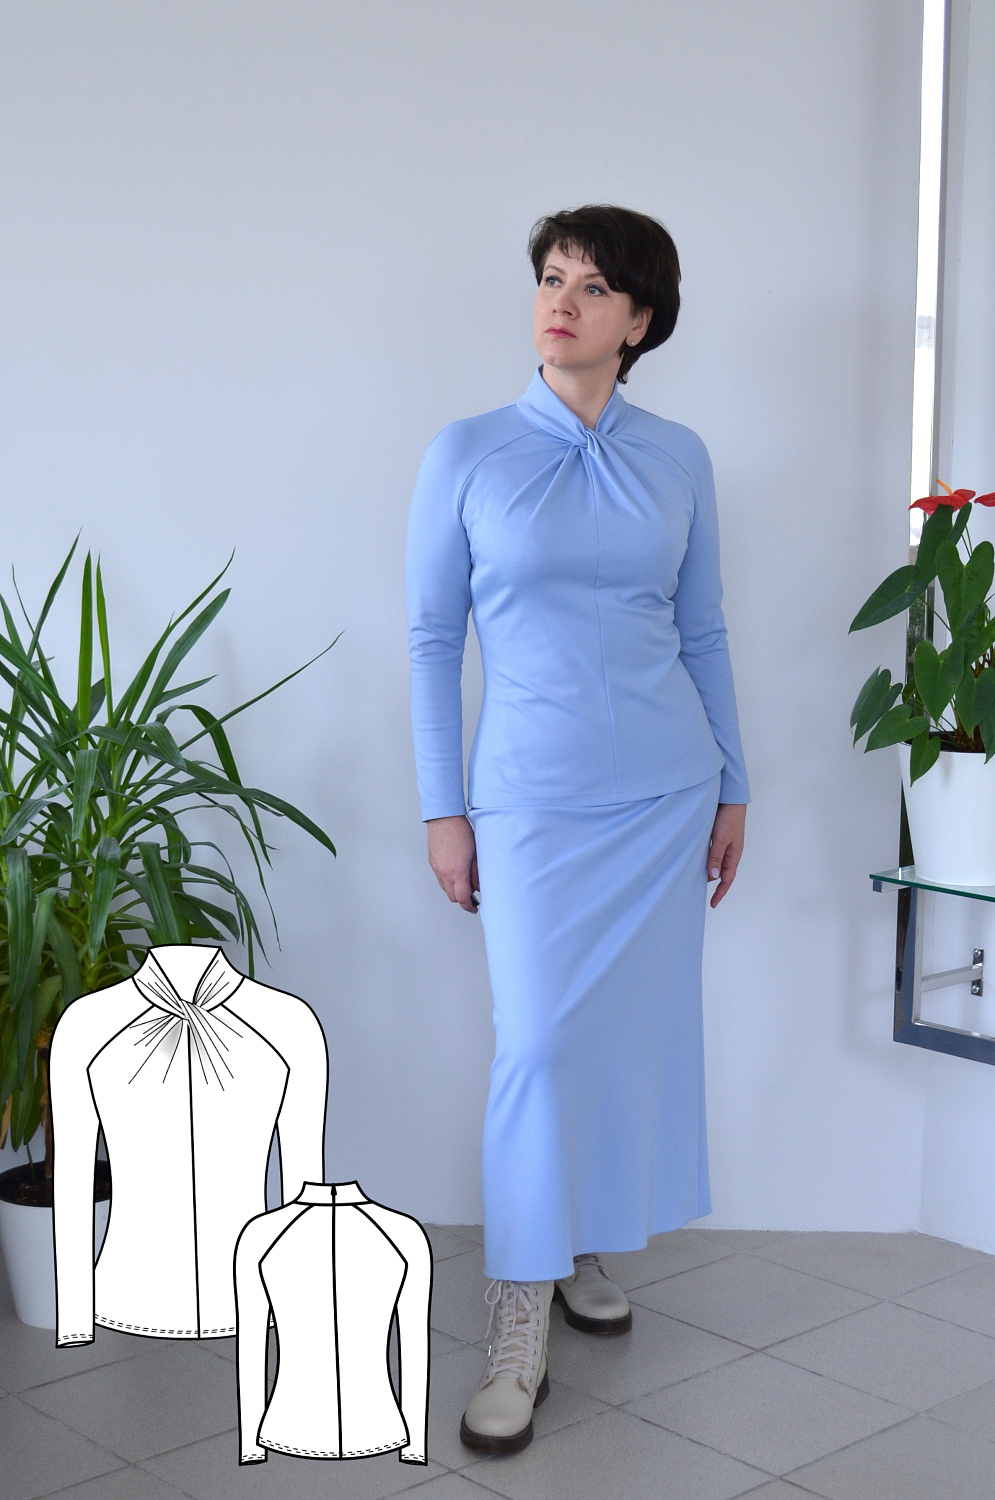 Выкройки Lekala - Женские Блузки Выкройки для шитья На Ваш размер и Открытая лицензия